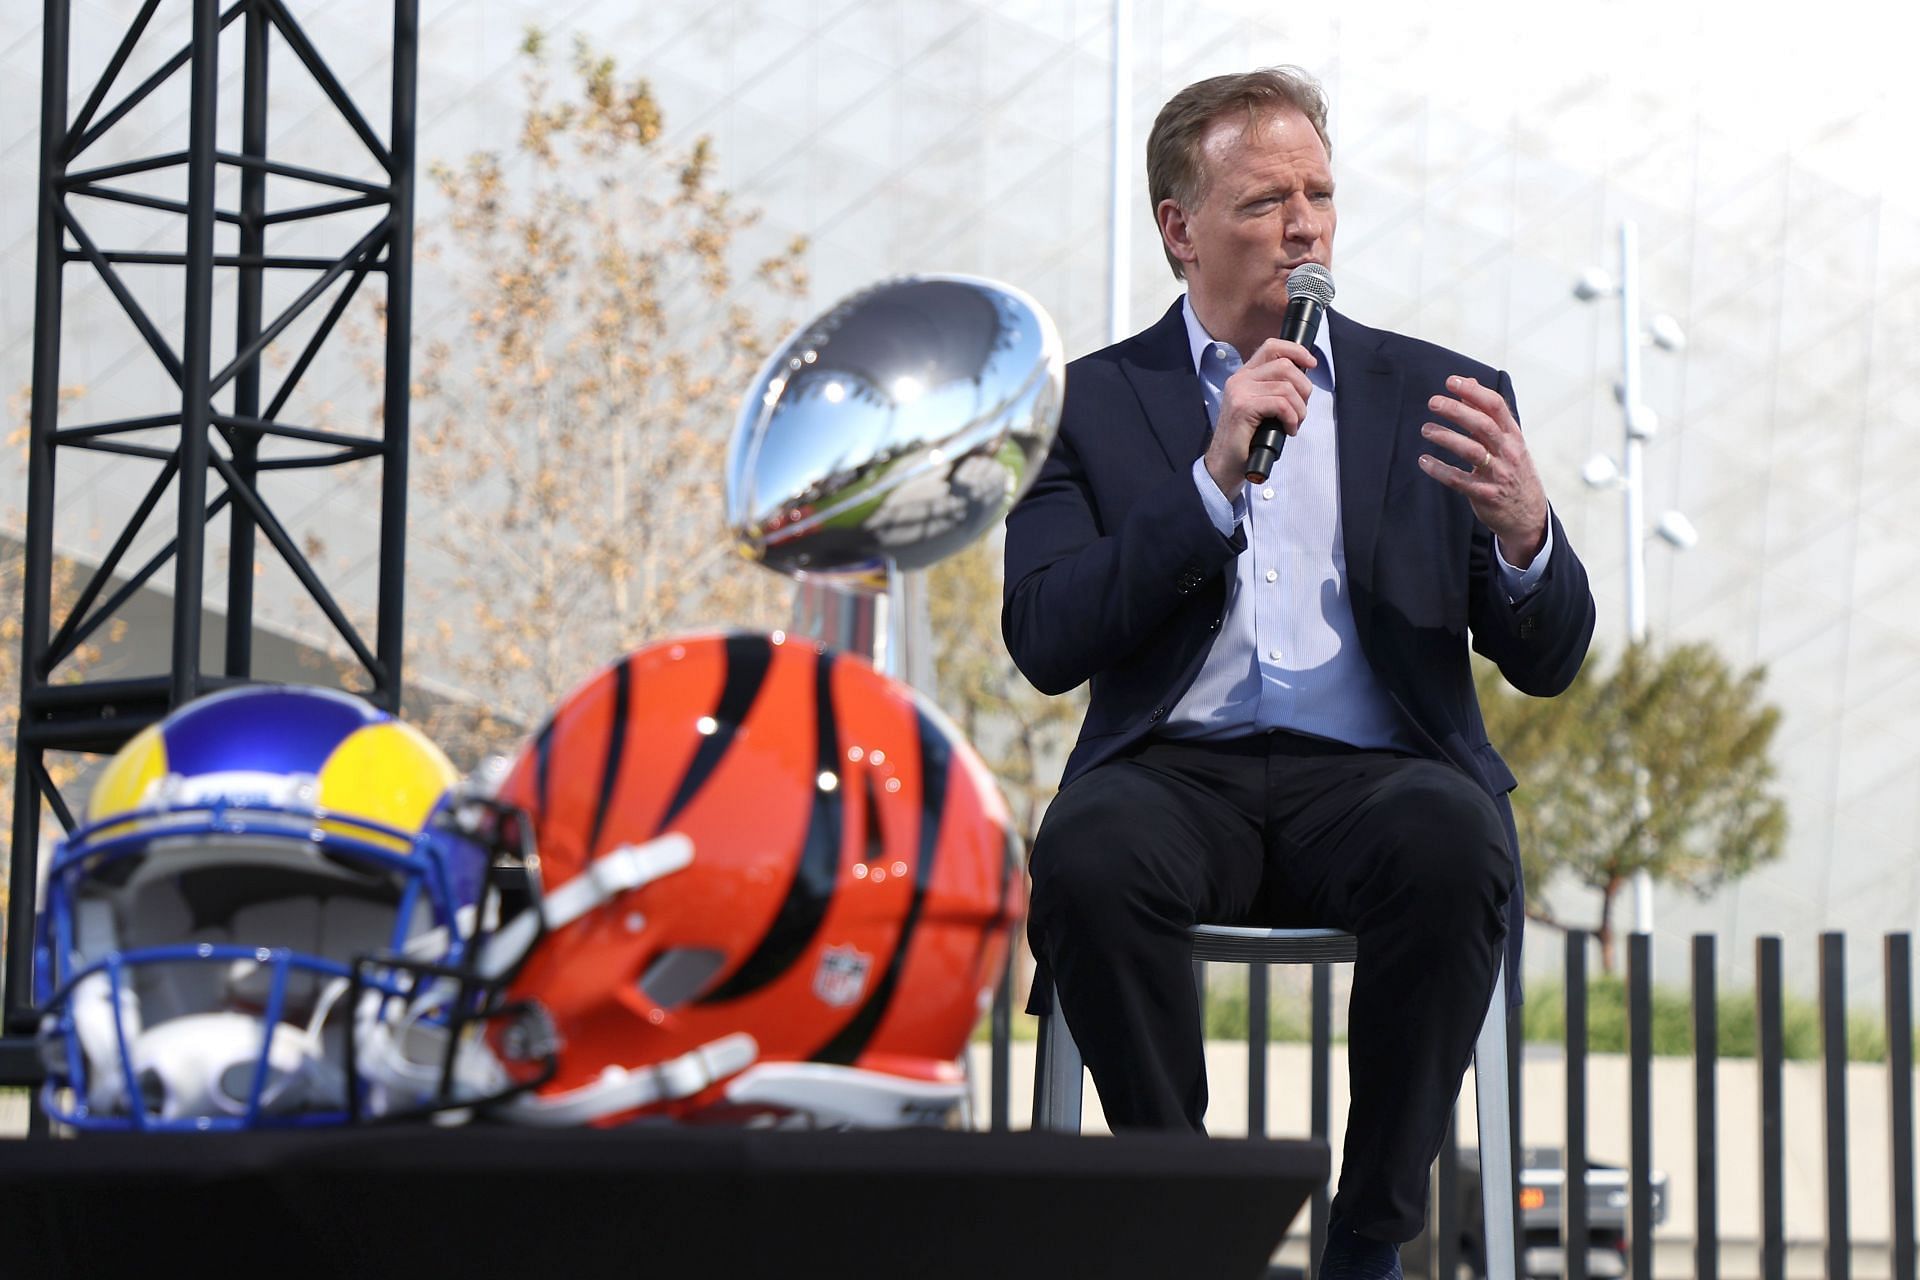 NFL Commissioner Roger Goodell's Super Bowl Press Conference